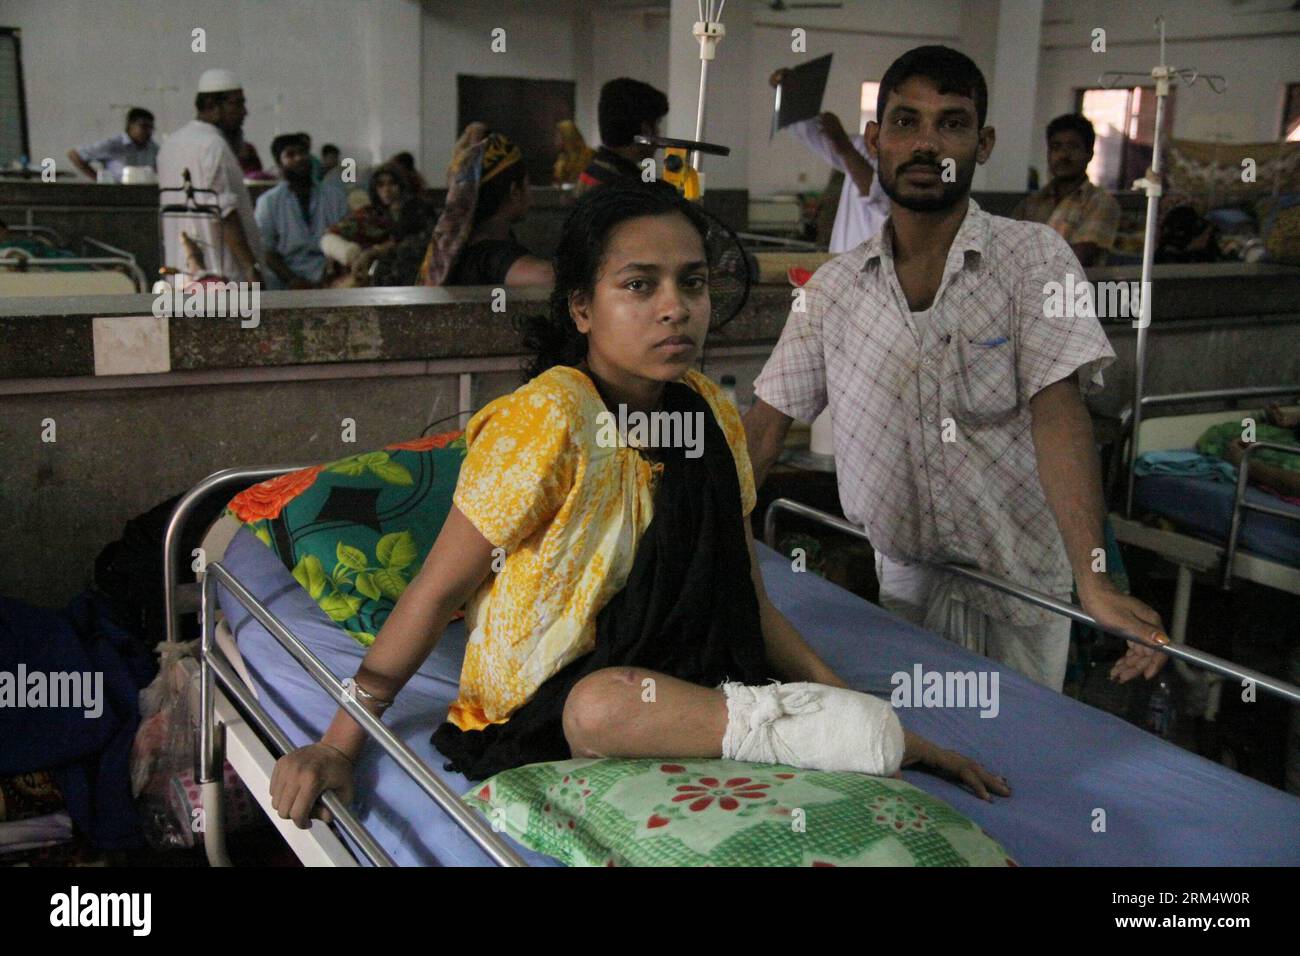 Bildnummer: 60516845 Datum: 23.09.2013 Copyright: imago/Xinhua (130923) -- DACCA, 23 settembre 2013 (Xinhua) -- Una donna che ha perso le gambe durante il crollo dell'edificio di Rana Plaza riceve cure in un ospedale a Dacca, Bangladesh, 23 settembre 2013. Una squadra medica tailandese di 63 membri domenica è arrivata a Dacca per fornire protesi a 100 amputati del Bangladesh, tra cui le vittime del collasso dell'edificio di Rana Plaza. (Xinhua/Shariful Islam) BANGLADESH-DACCA-THAILANDIA-SERVIZIO MEDICO-PROTESI GAMBE PUBLICATIONxNOTxINxCHN Gesellschaft Prothesen Rehabilitation Herstellung medizinische Betreuung x0x xrj 2013 quer 6 Foto Stock